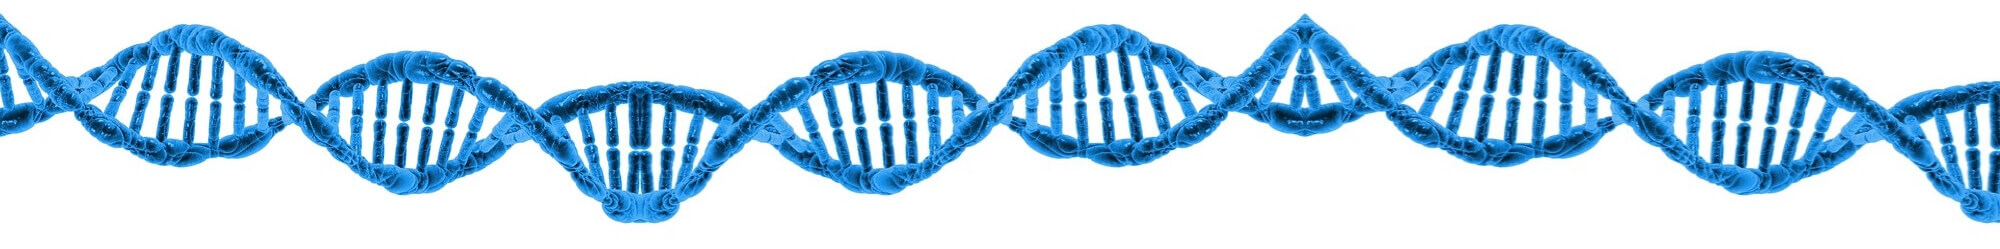 DNA-Screening - Die Zukunft der Dna Diagnostik